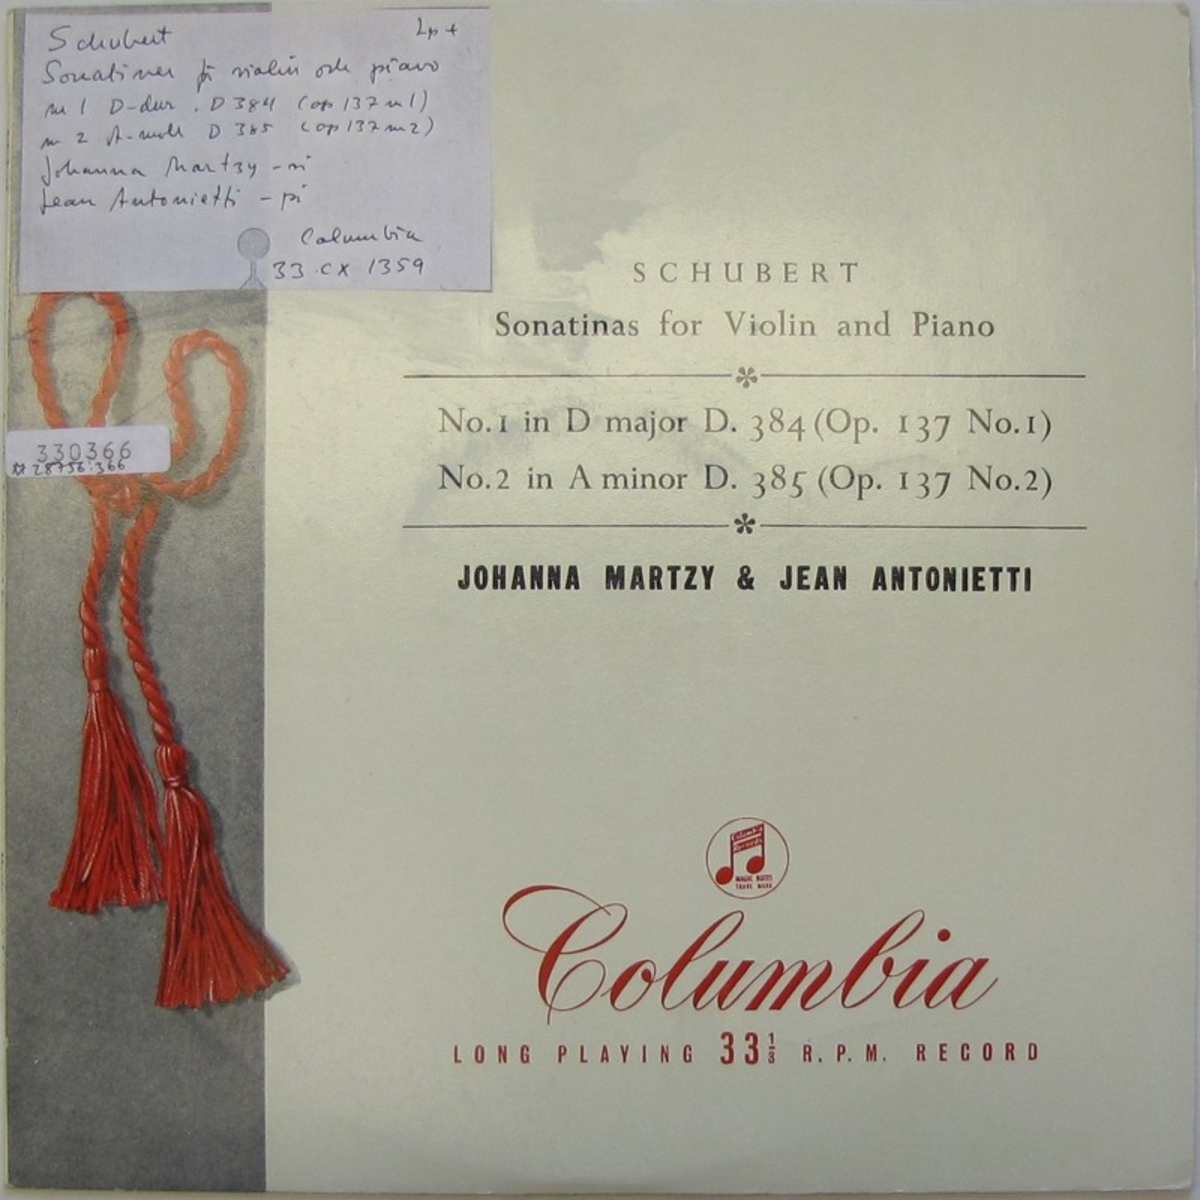 LP-skiva av märket Columbia